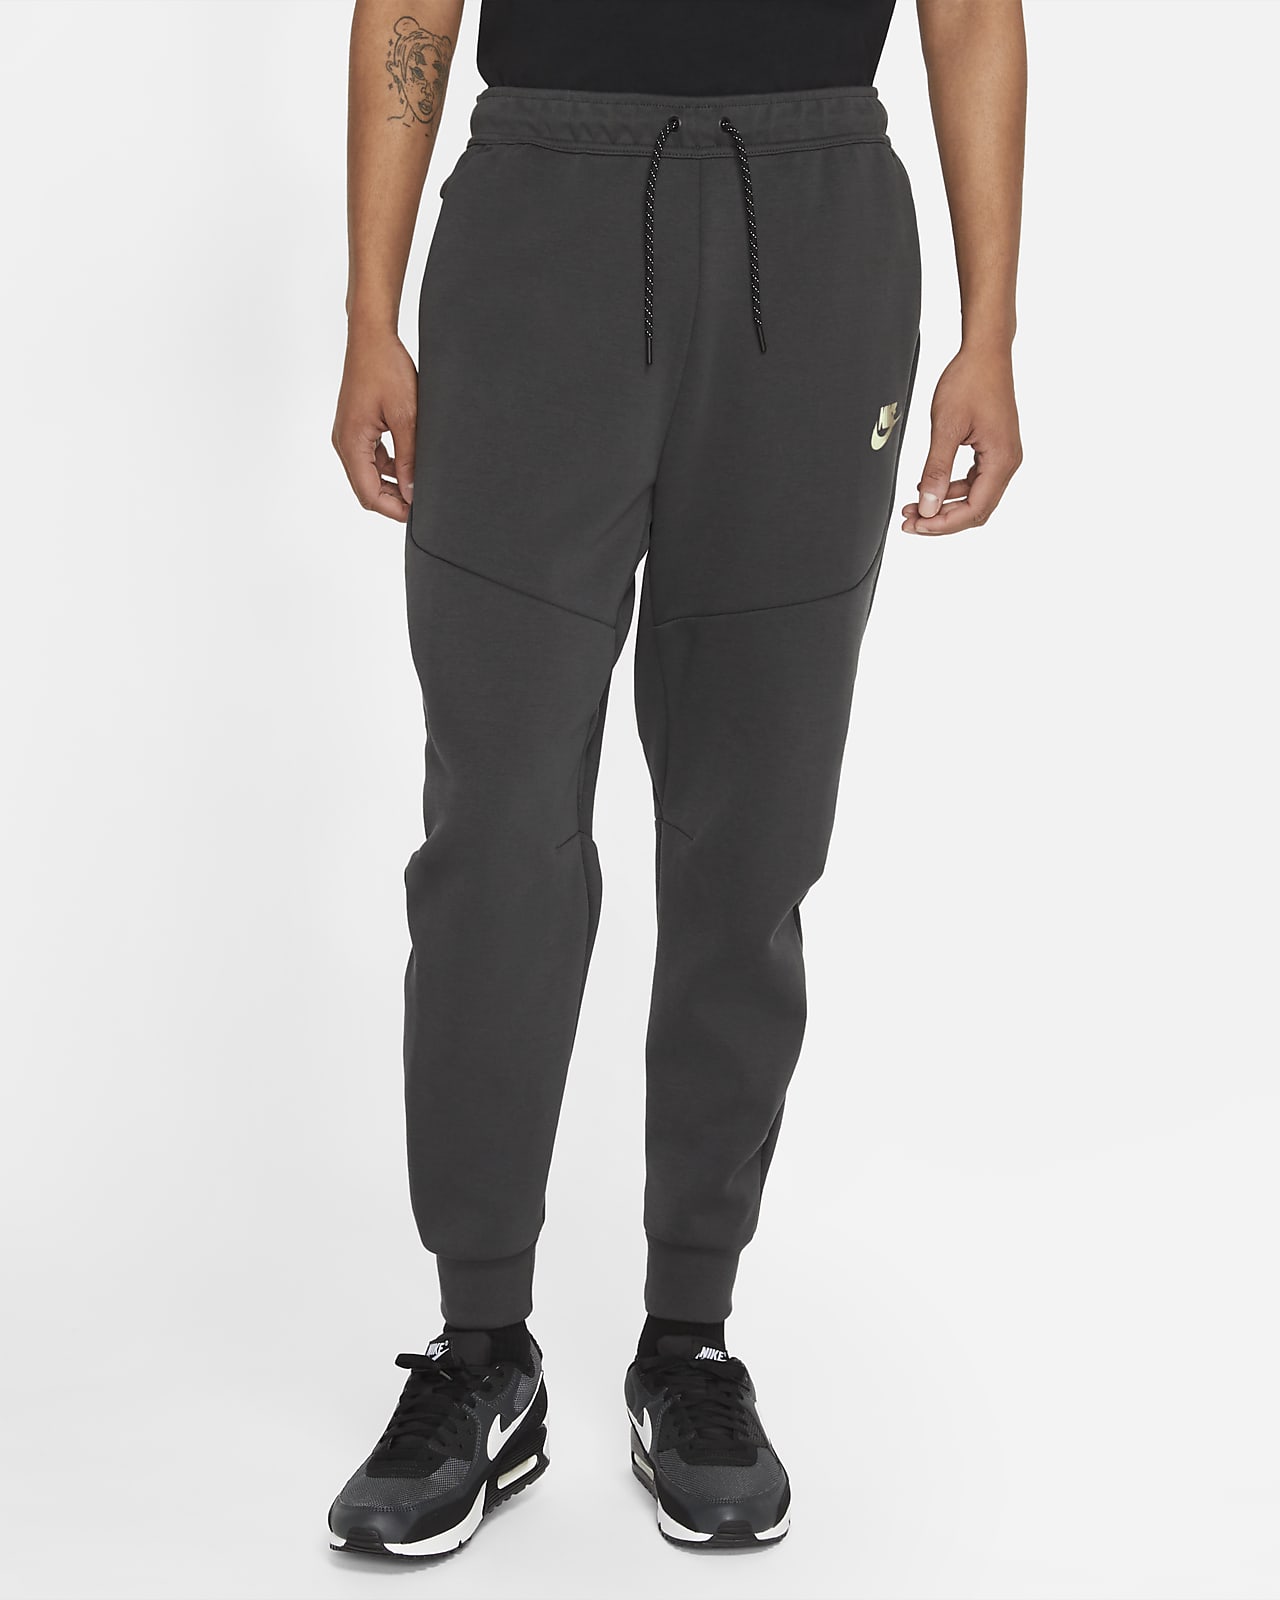 grey nike sweatpants for men